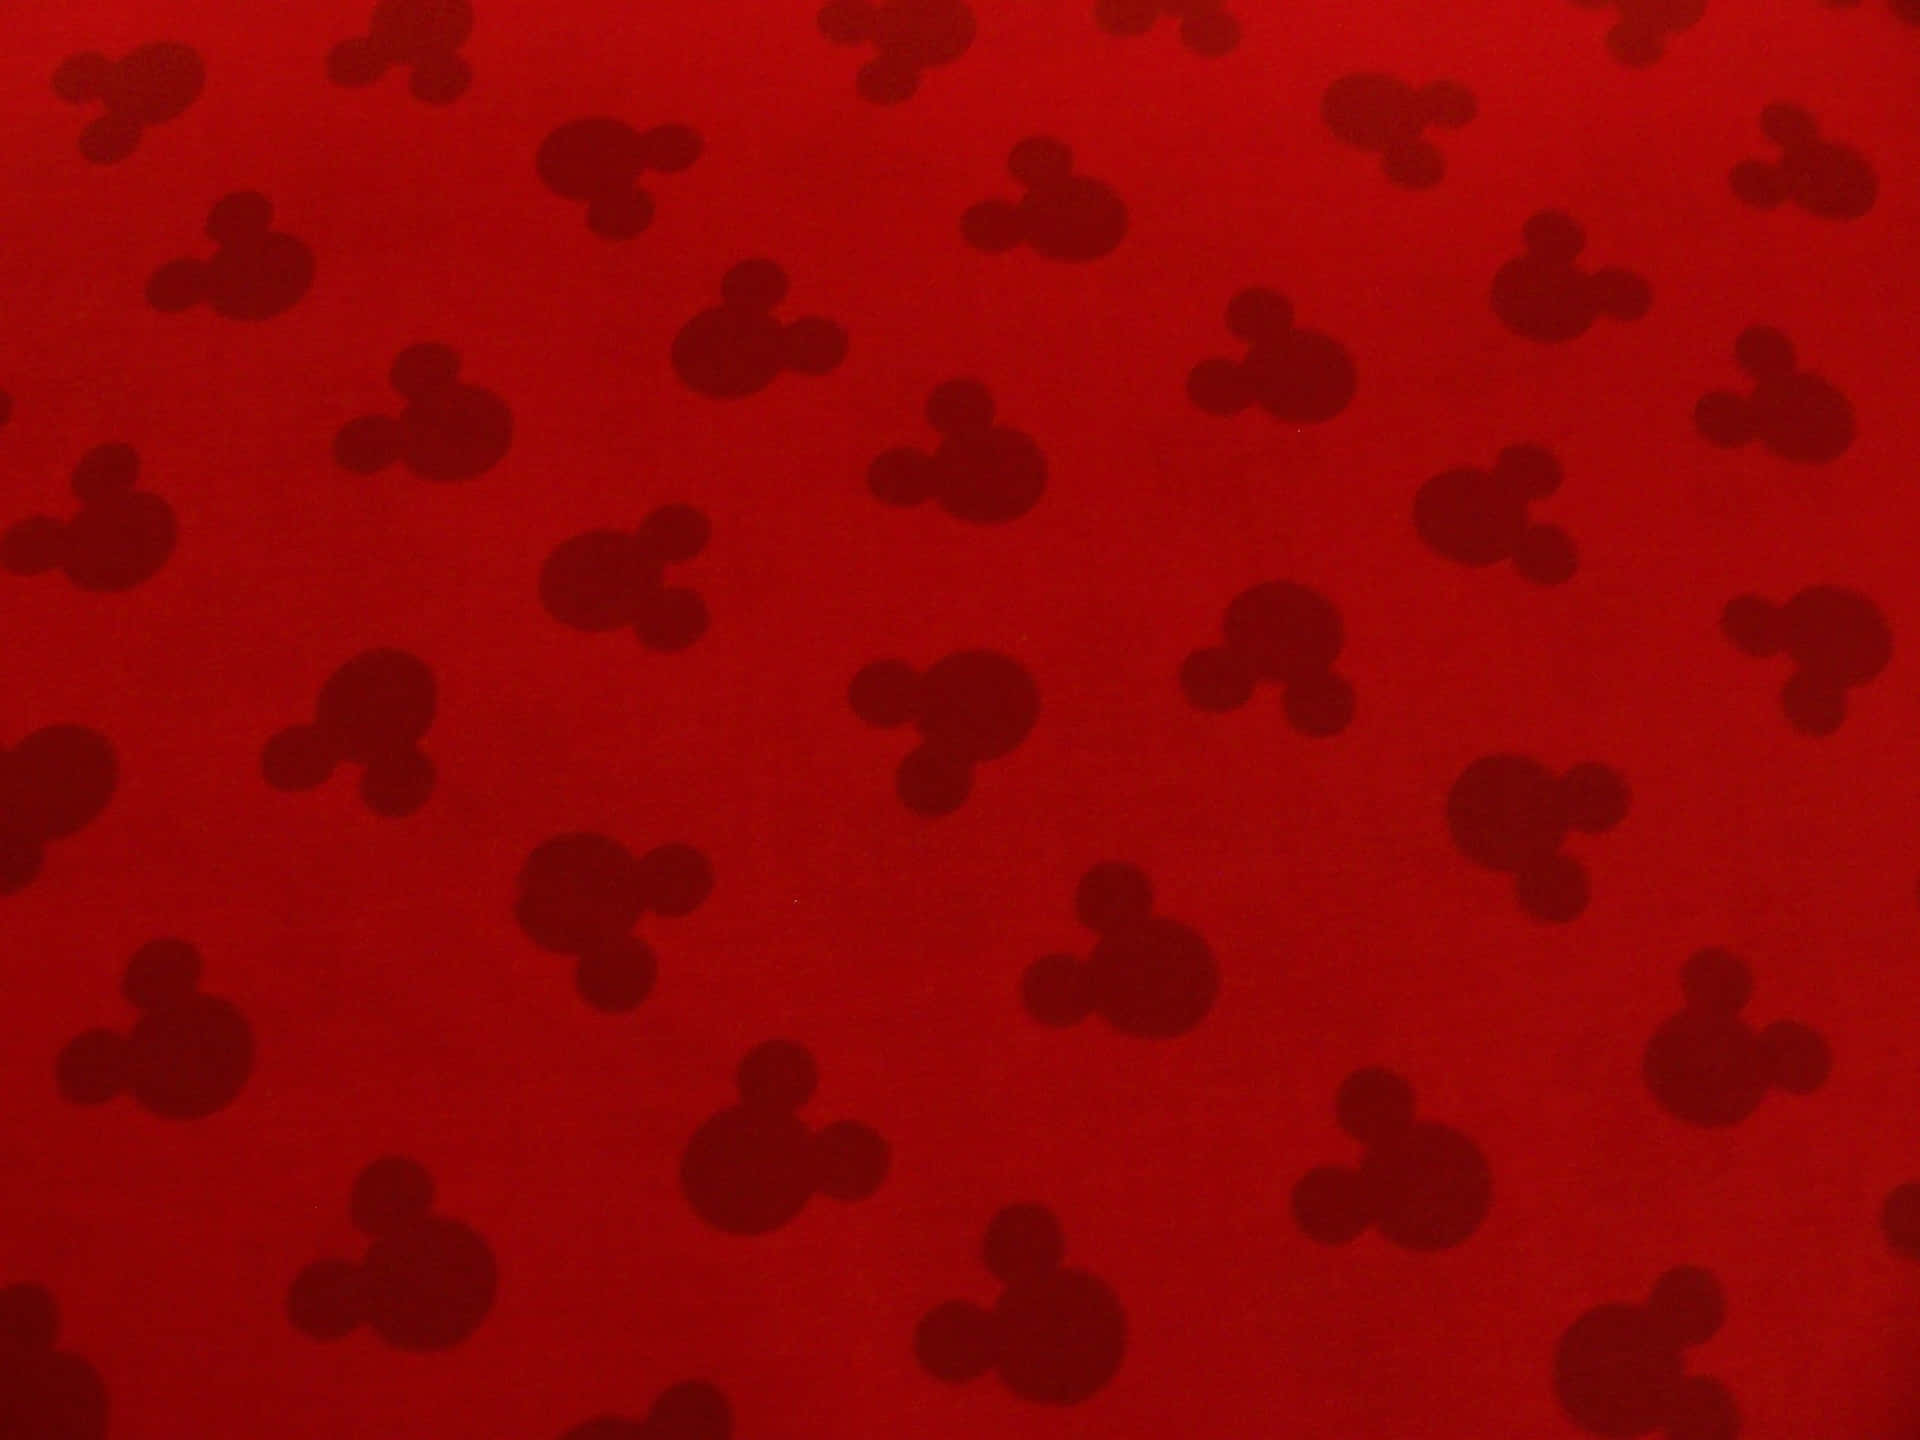 Mickeymouse-öron - Den Kvintessentiella Symbolen För Disney-roligheter! Wallpaper